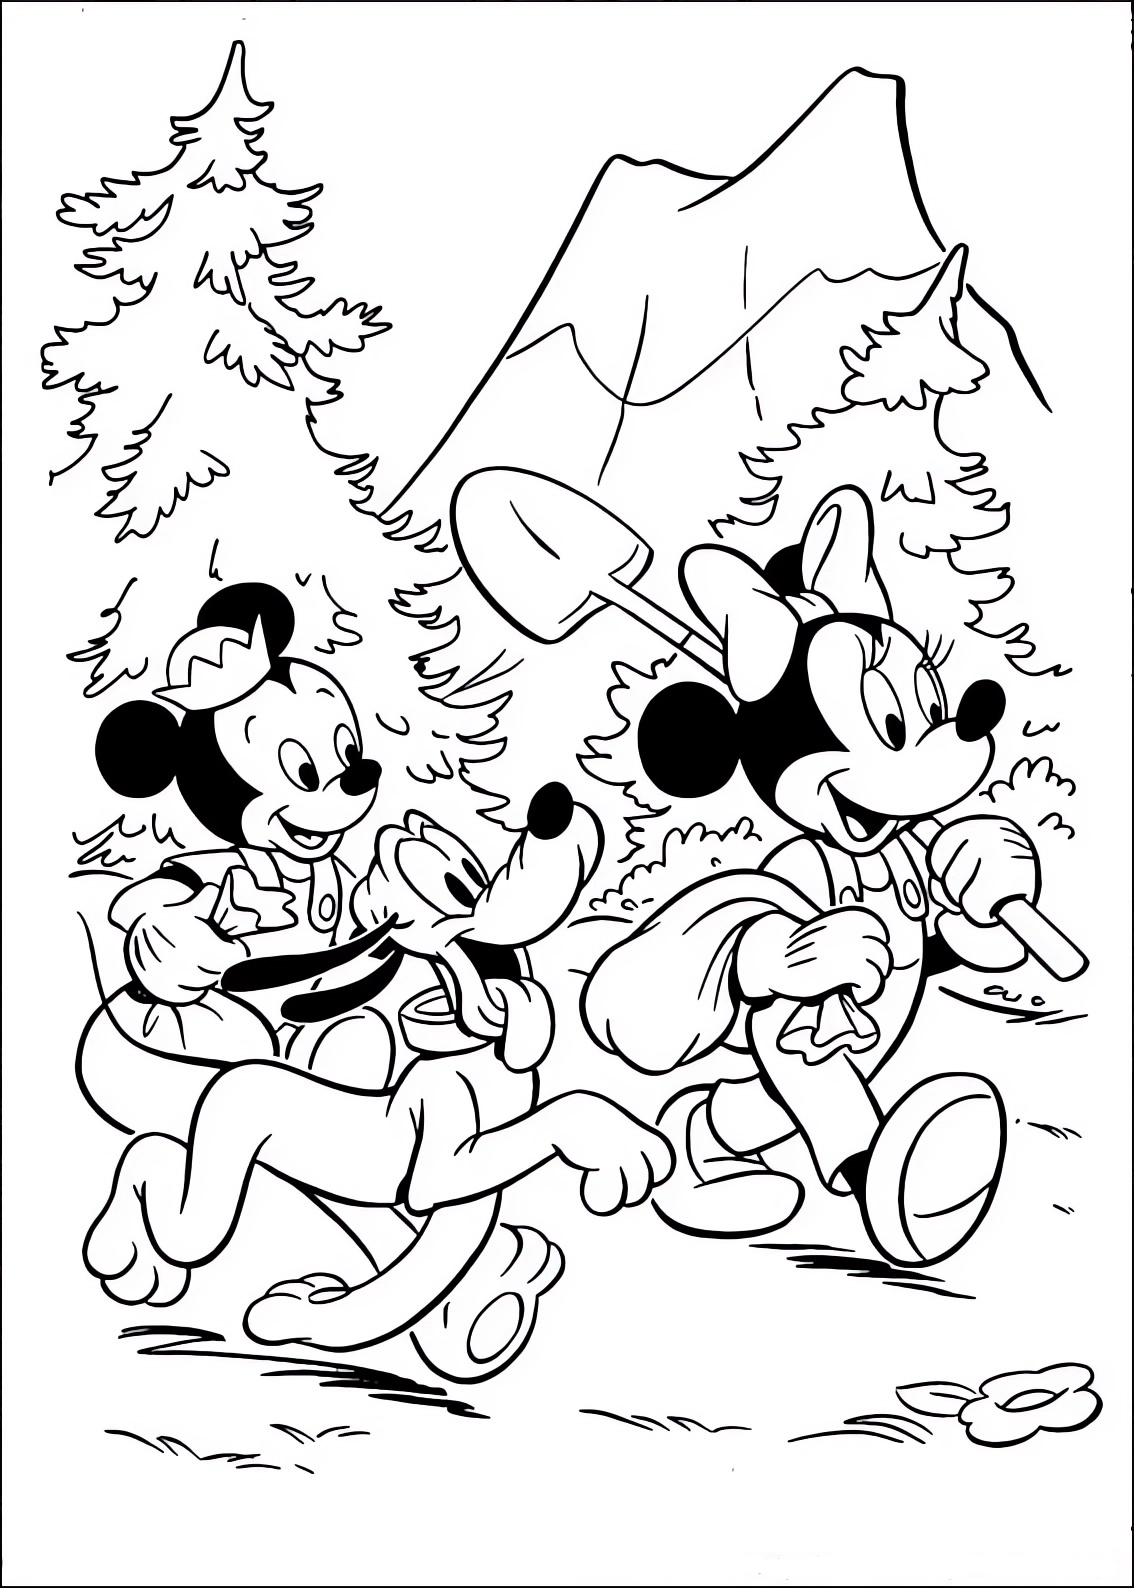 Disegno da colorare di Minnie, Tap e Pluto camminano nel bosco